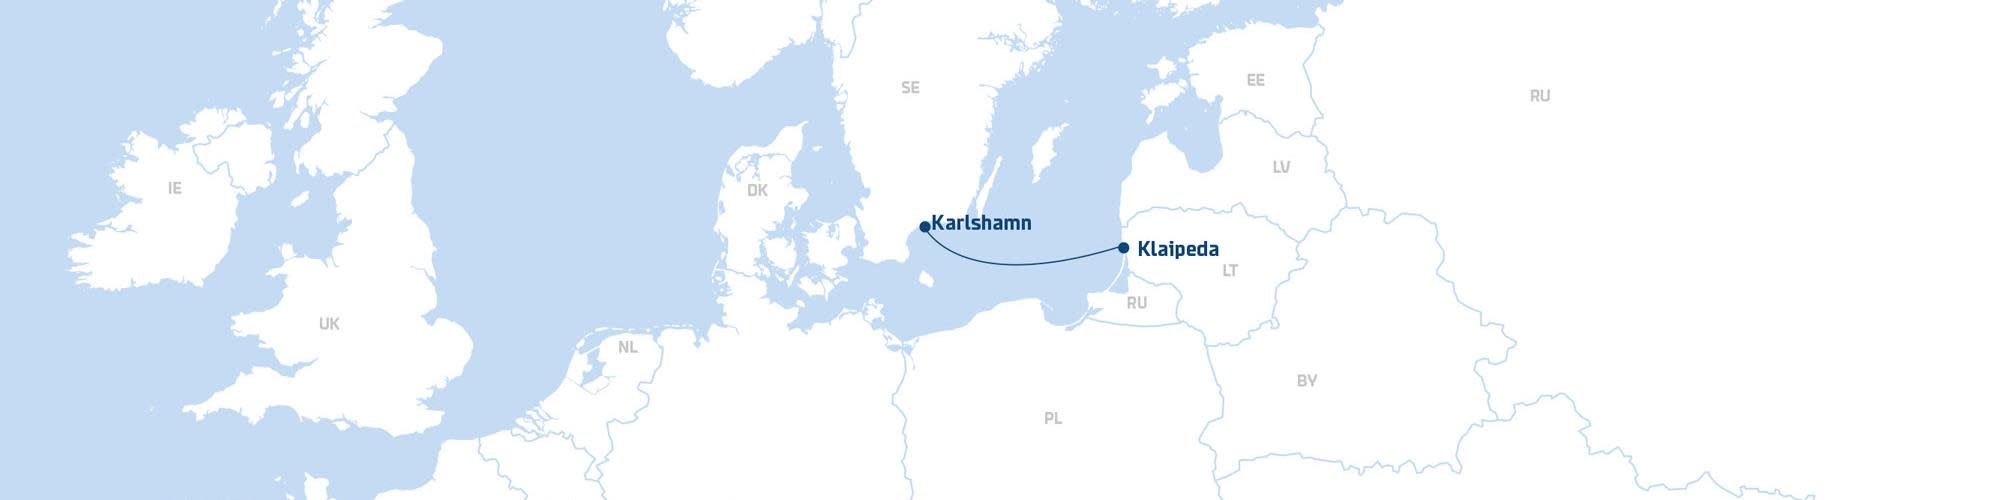 Klaipeda-Karlshamn map